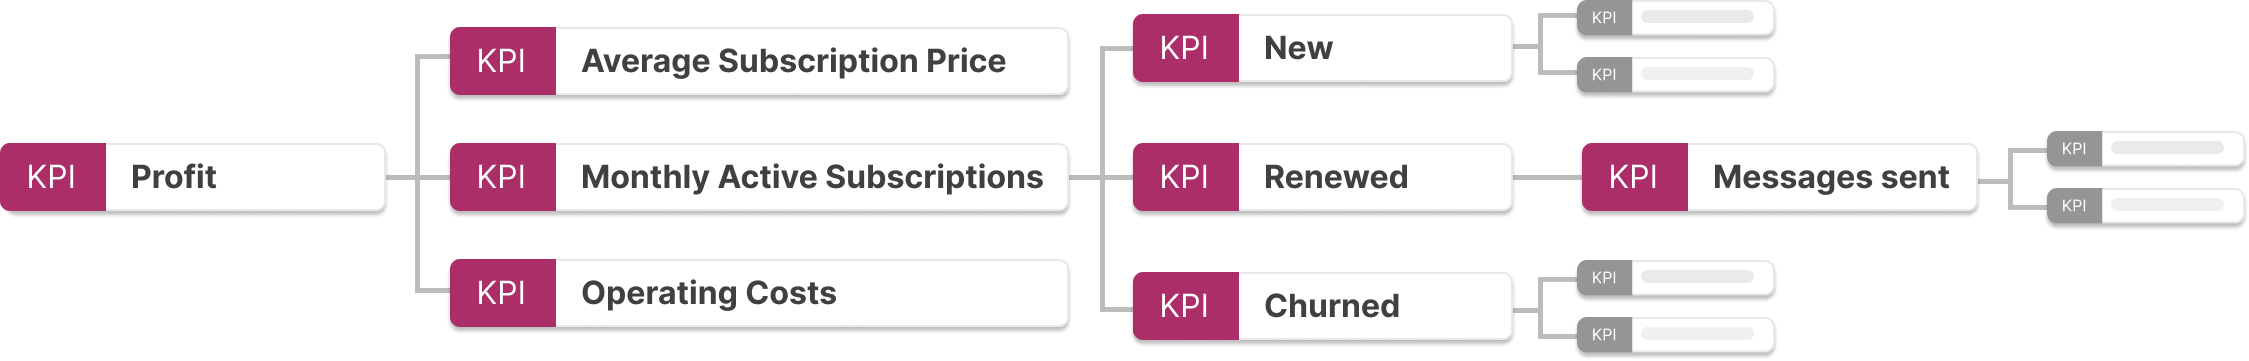 KPI Tree 3